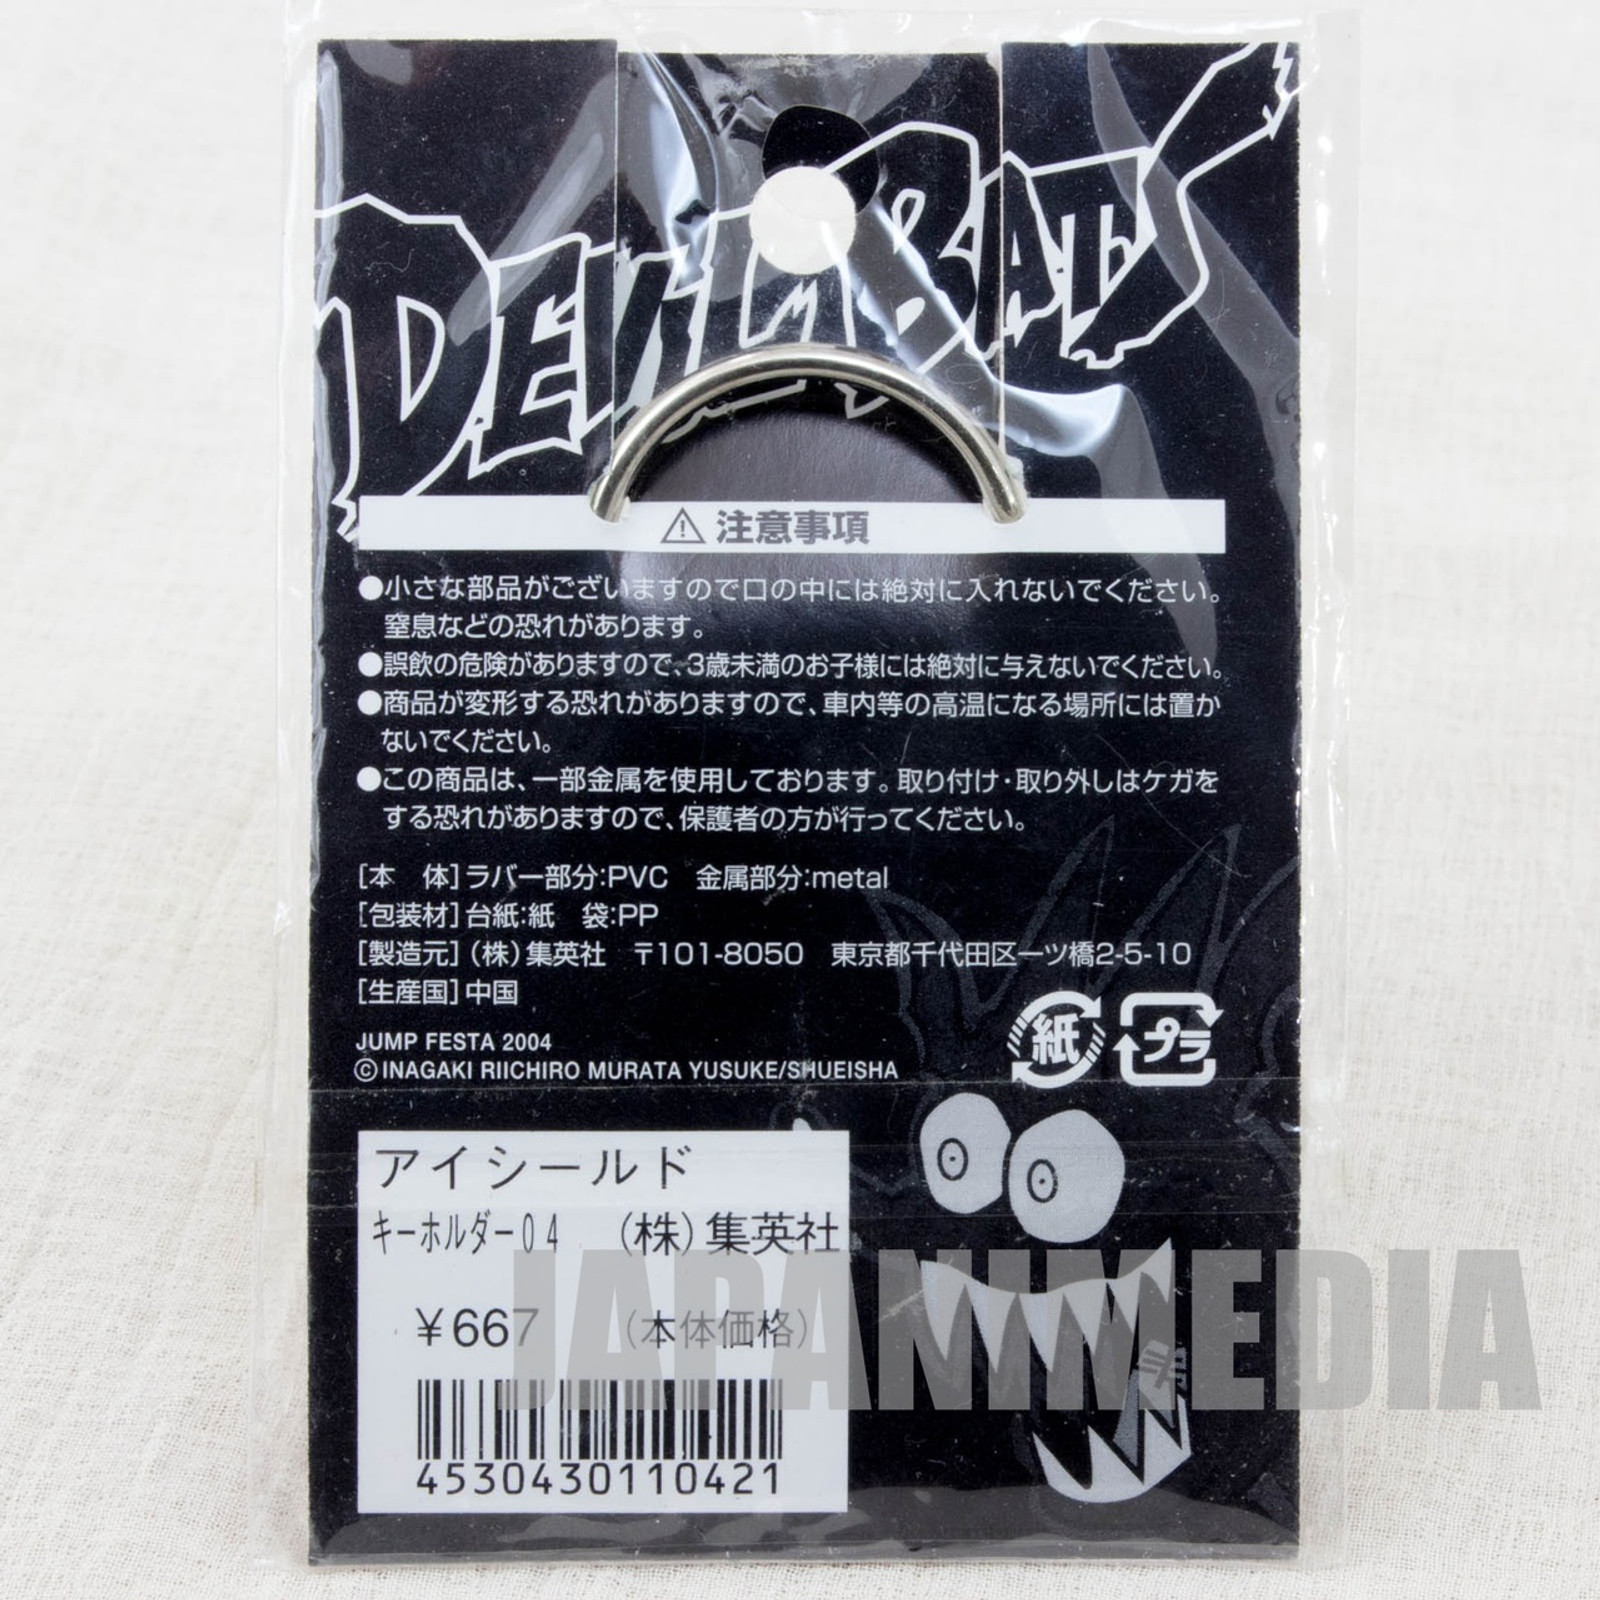 Eyeshield 21 DEVILBAT DEIMON DEVILBATS Rubber Key Chain JAPAN ANIME MANGA